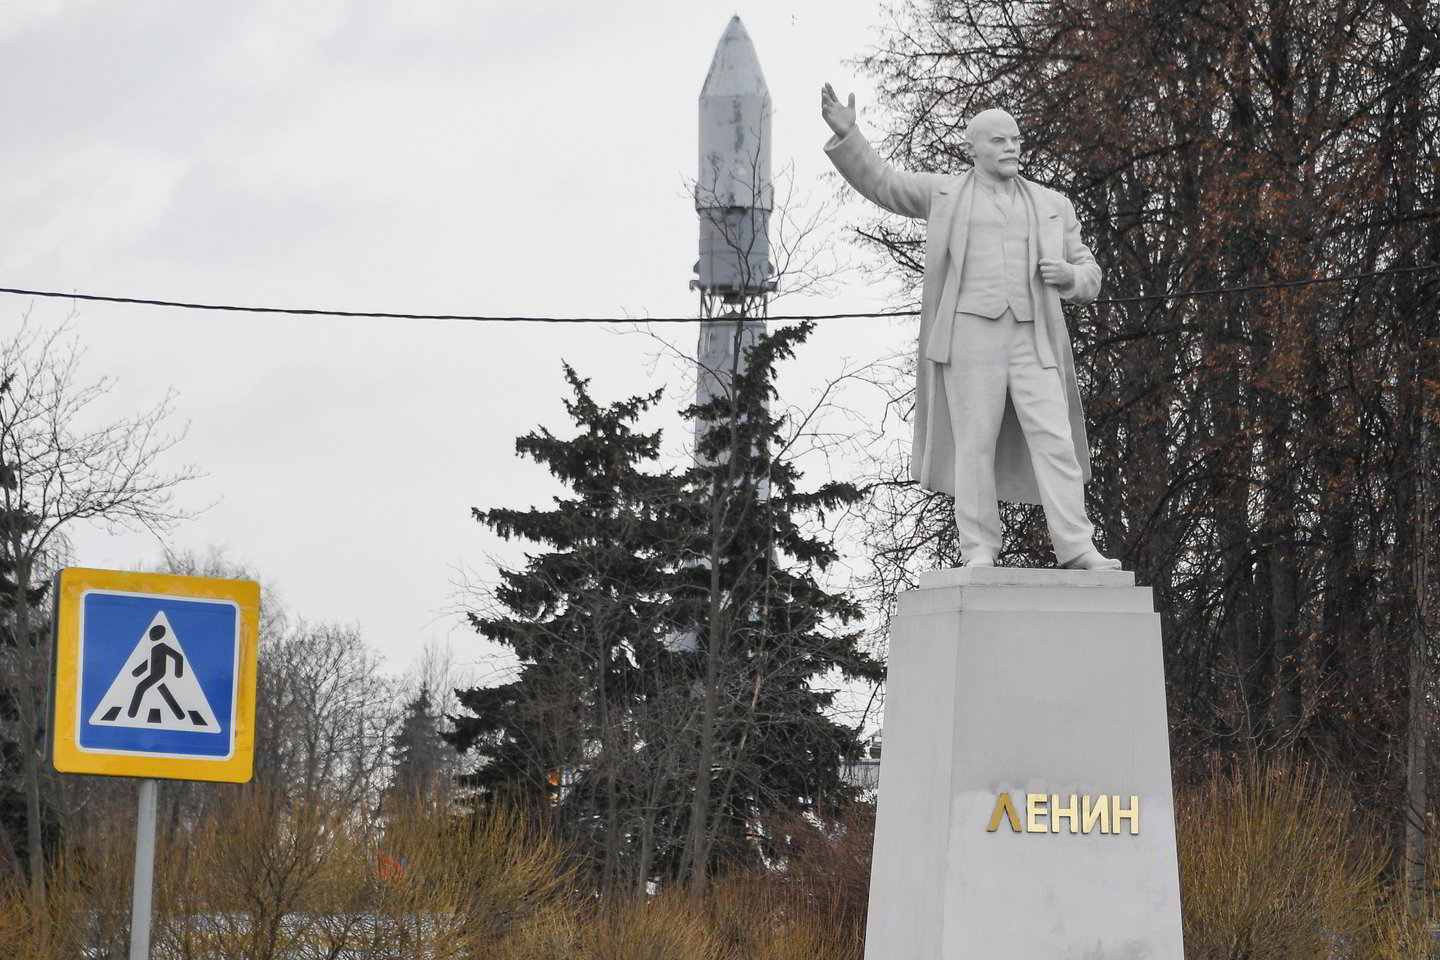  Rusijoje - gausybė paminklų V.Leninui.<br> Scanpix nuotr.